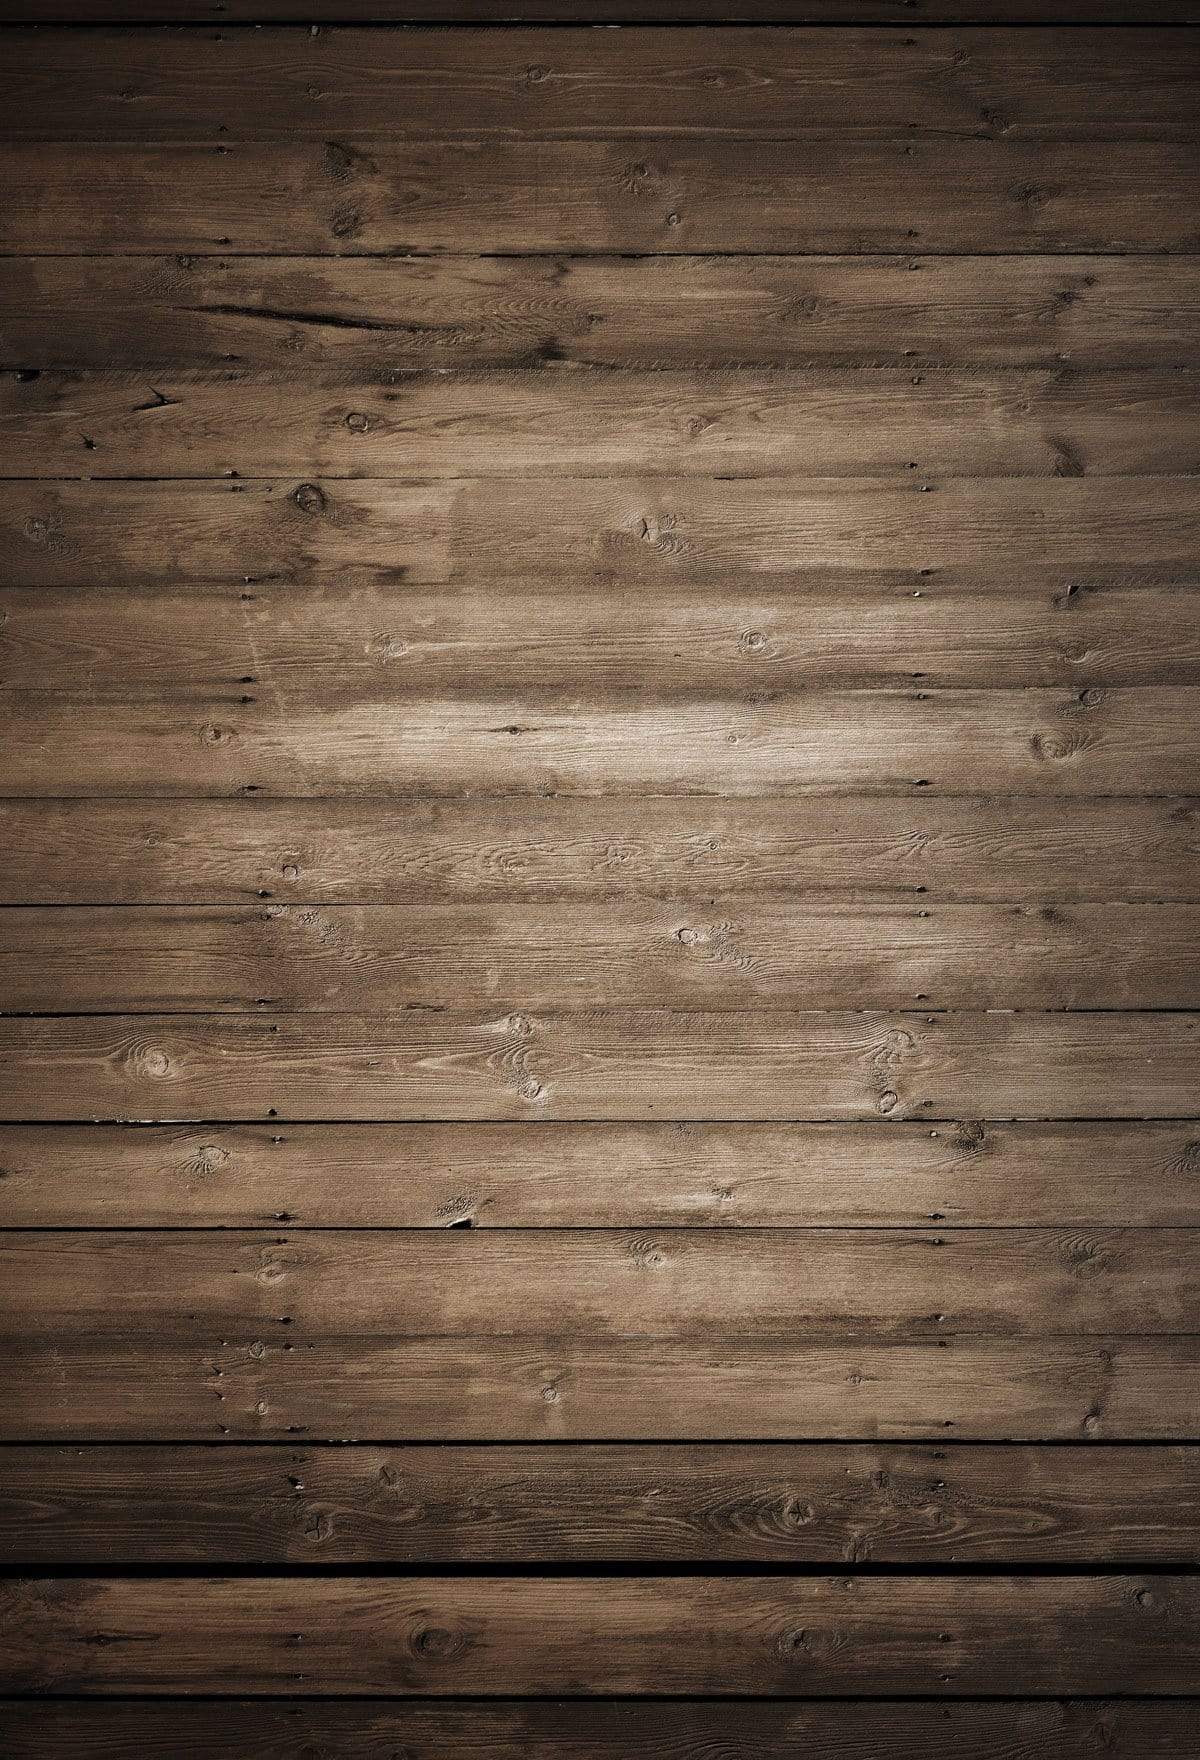 Phông nền gỗ cổ Kate mang lại vẻ đẹp tinh tế với những đường vân của gỗ cổ trên nền trắng mịn màng. Hãy để phông nền gỗ Kate làm điểm nhấn cho các bức ảnh của bạn và đảm bảo sự chuyên nghiệp. Với sự kết hợp của màu trắng và gỗ cổ điển, phông nền này thực sự là một sự lựa chọn tuyệt vời cho các bức ảnh của bạn.